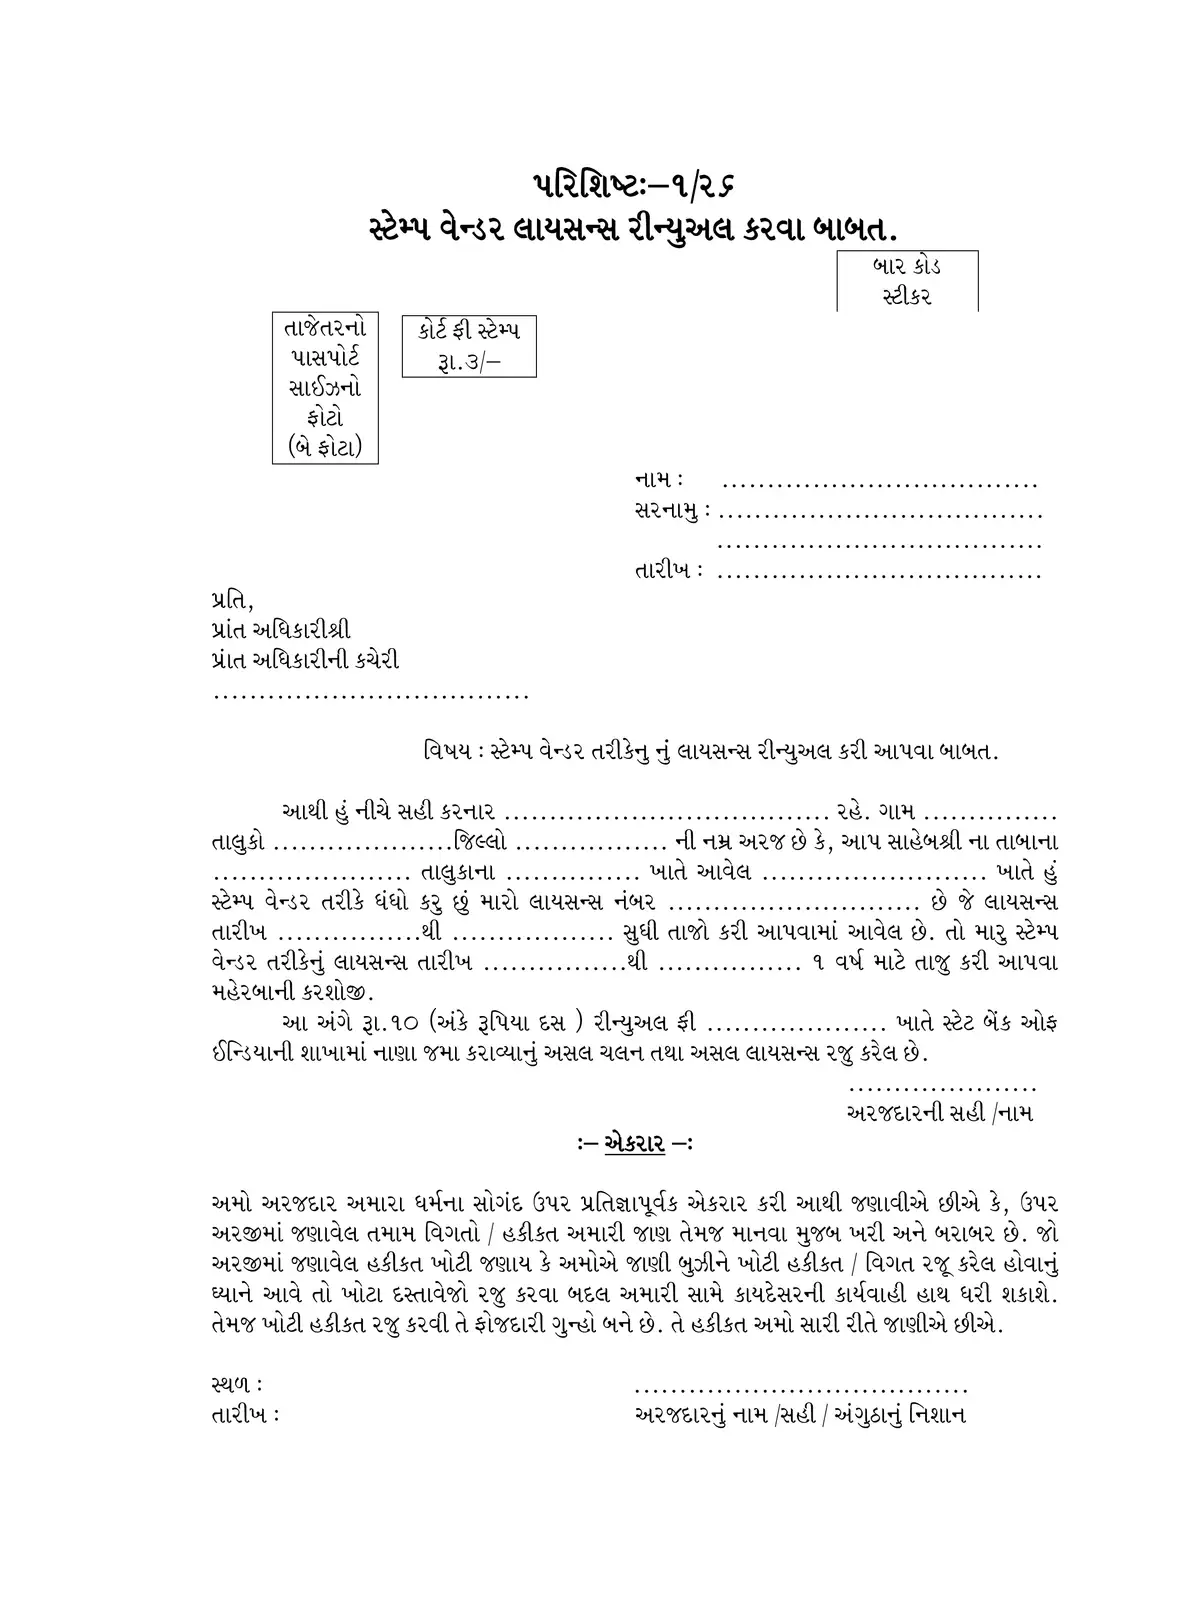 Gujarat Stamp Vendor License Form